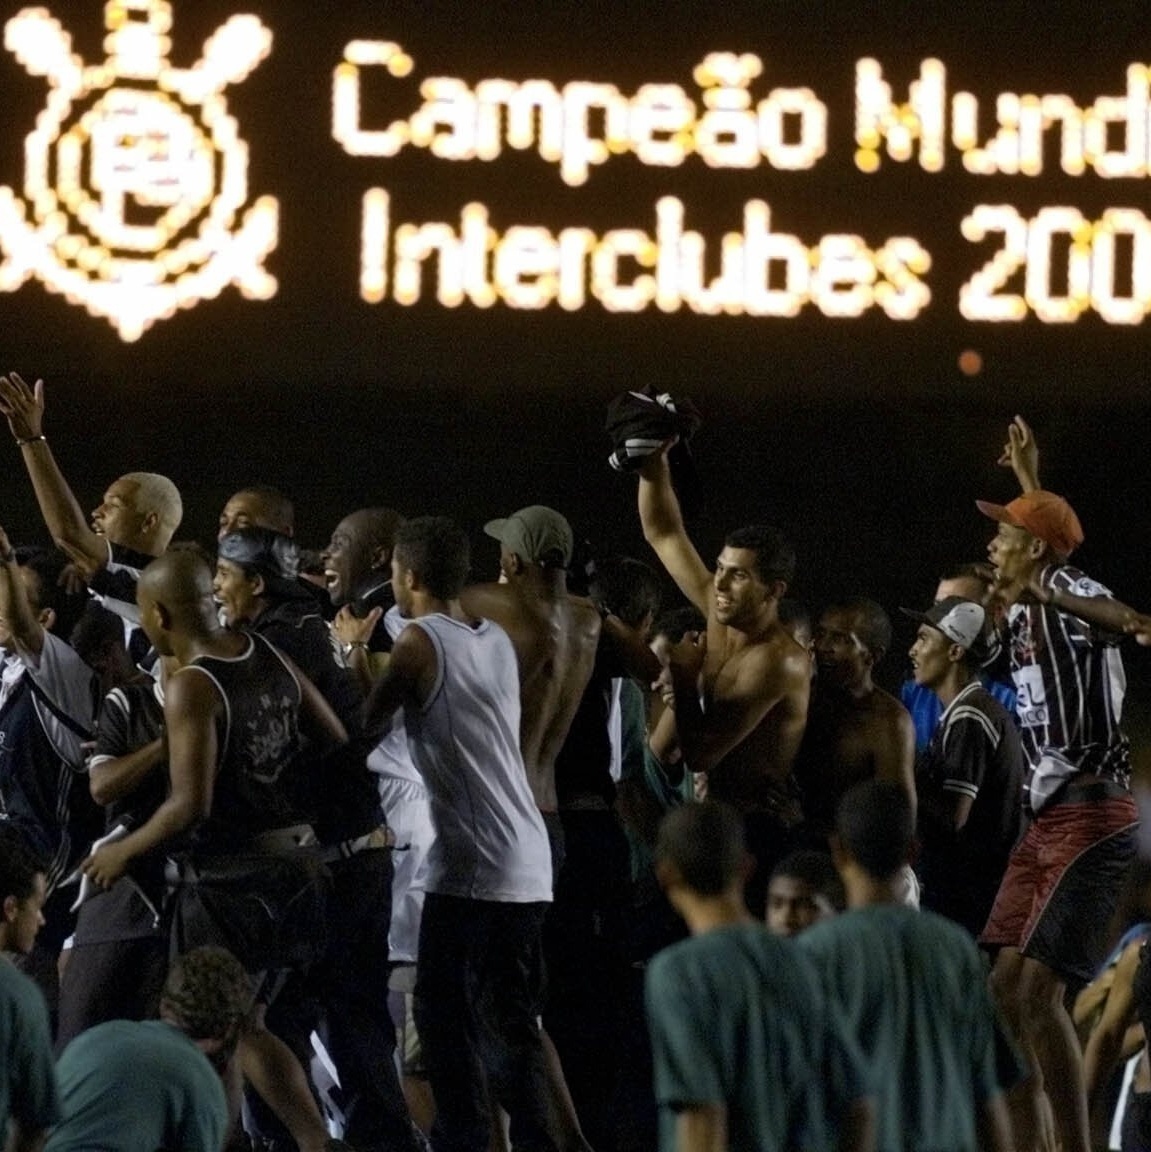 Como o Corinthians é campeão mundial sem ter a Libertadores?